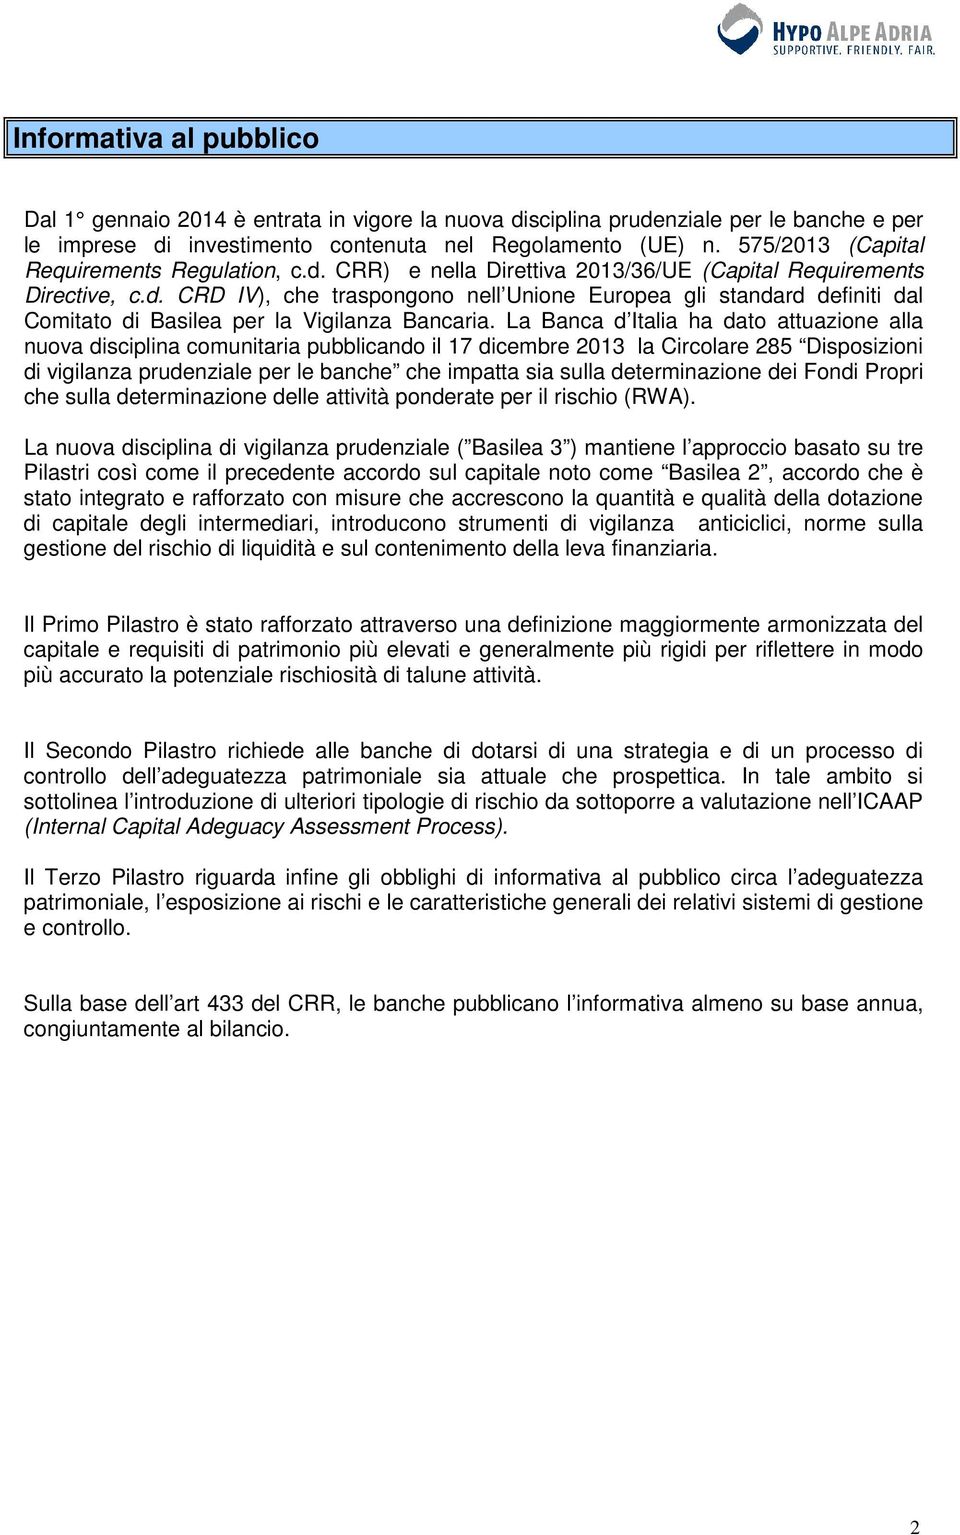 La Banca d Italia ha dato attuazione alla nuova disciplina comunitaria pubblicando il 17 dicembre 2013 la Circolare 285 Disposizioni di vigilanza prudenziale per le banche che impatta sia sulla